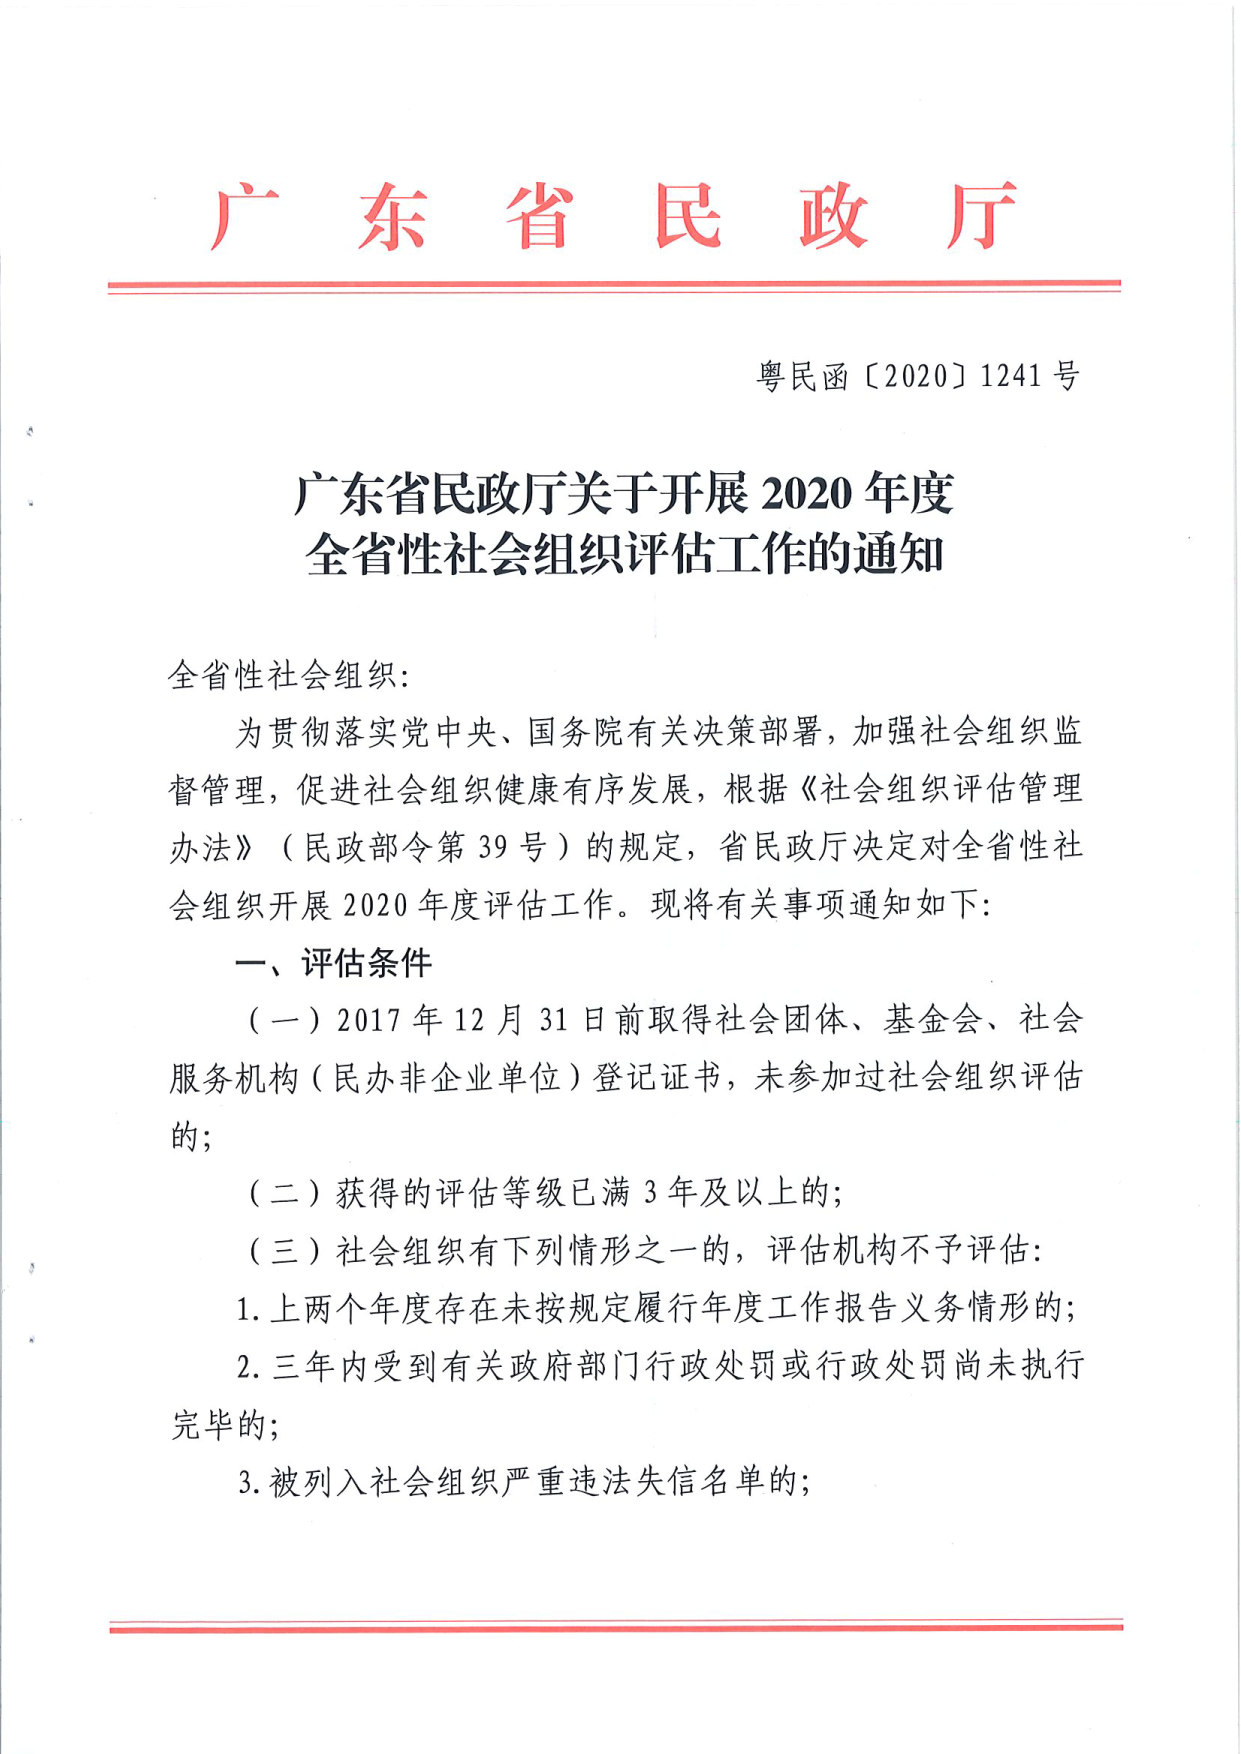 广东省民政厅关于开展2020年度全省性社会组织评估工作的通知_1.png